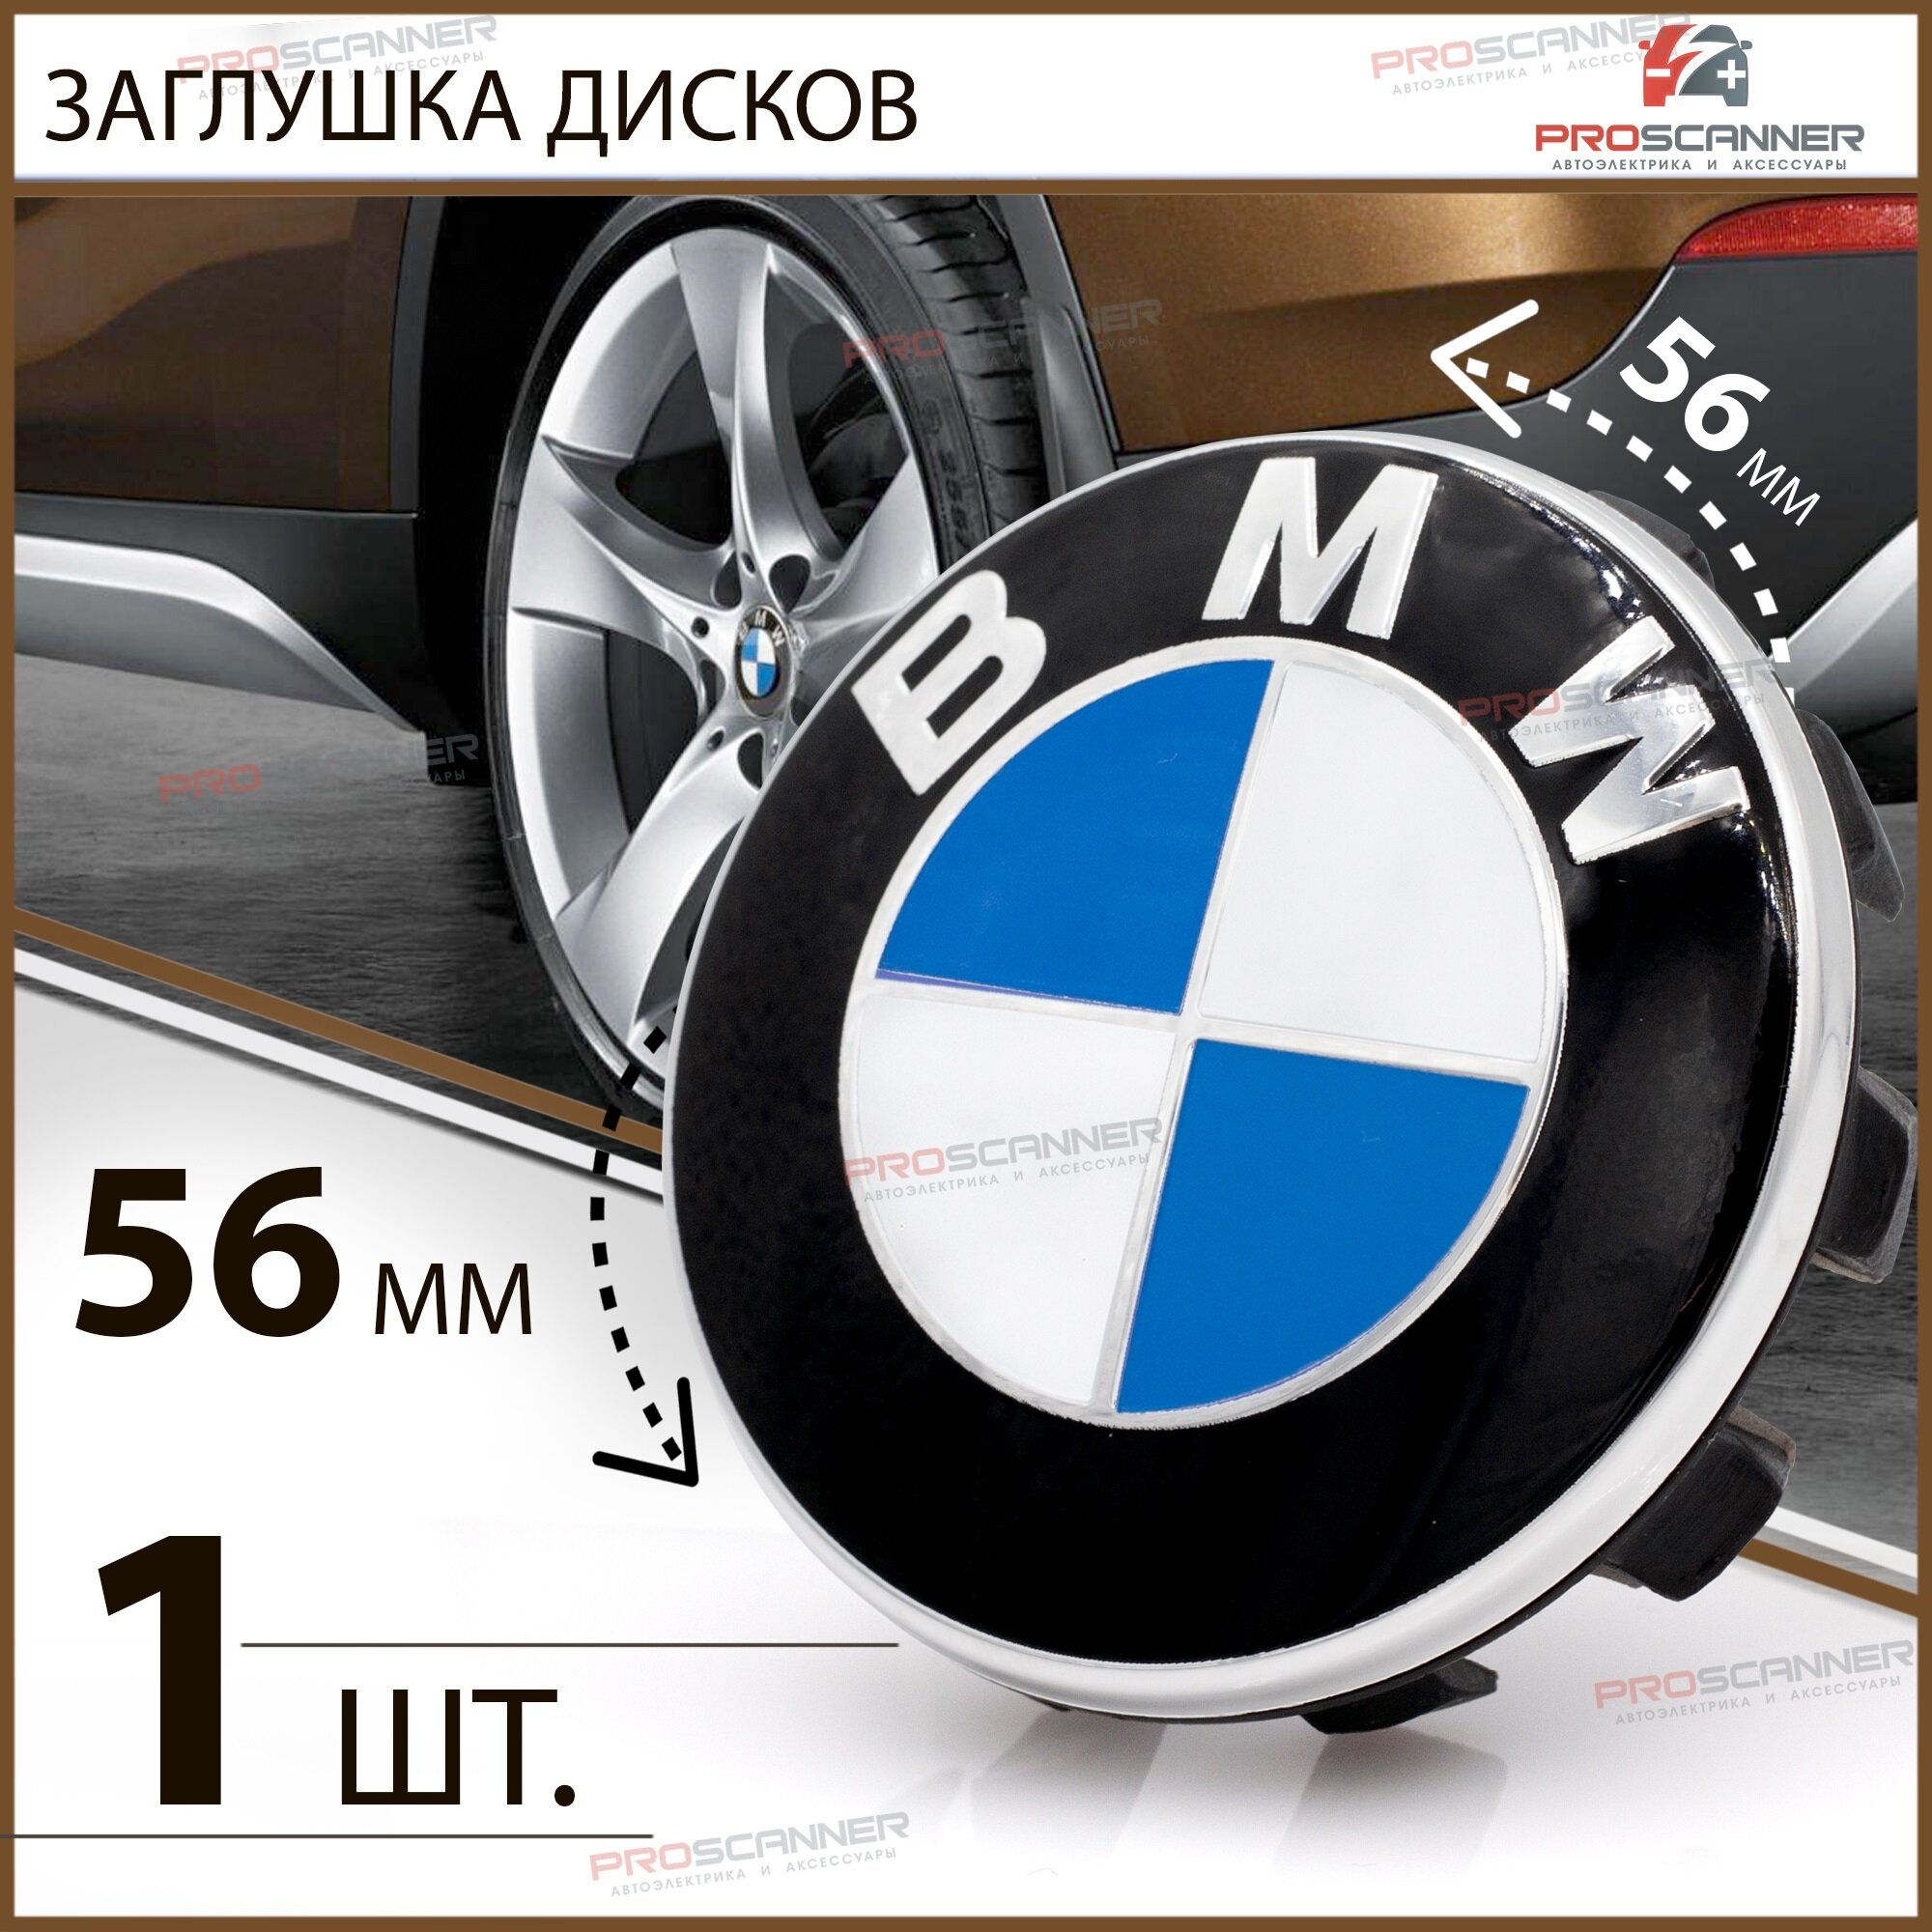 Колпачок заглушка на литой диск колеса для BMW БМВ 56 мм 685083401 - 1 штука, сине-белый